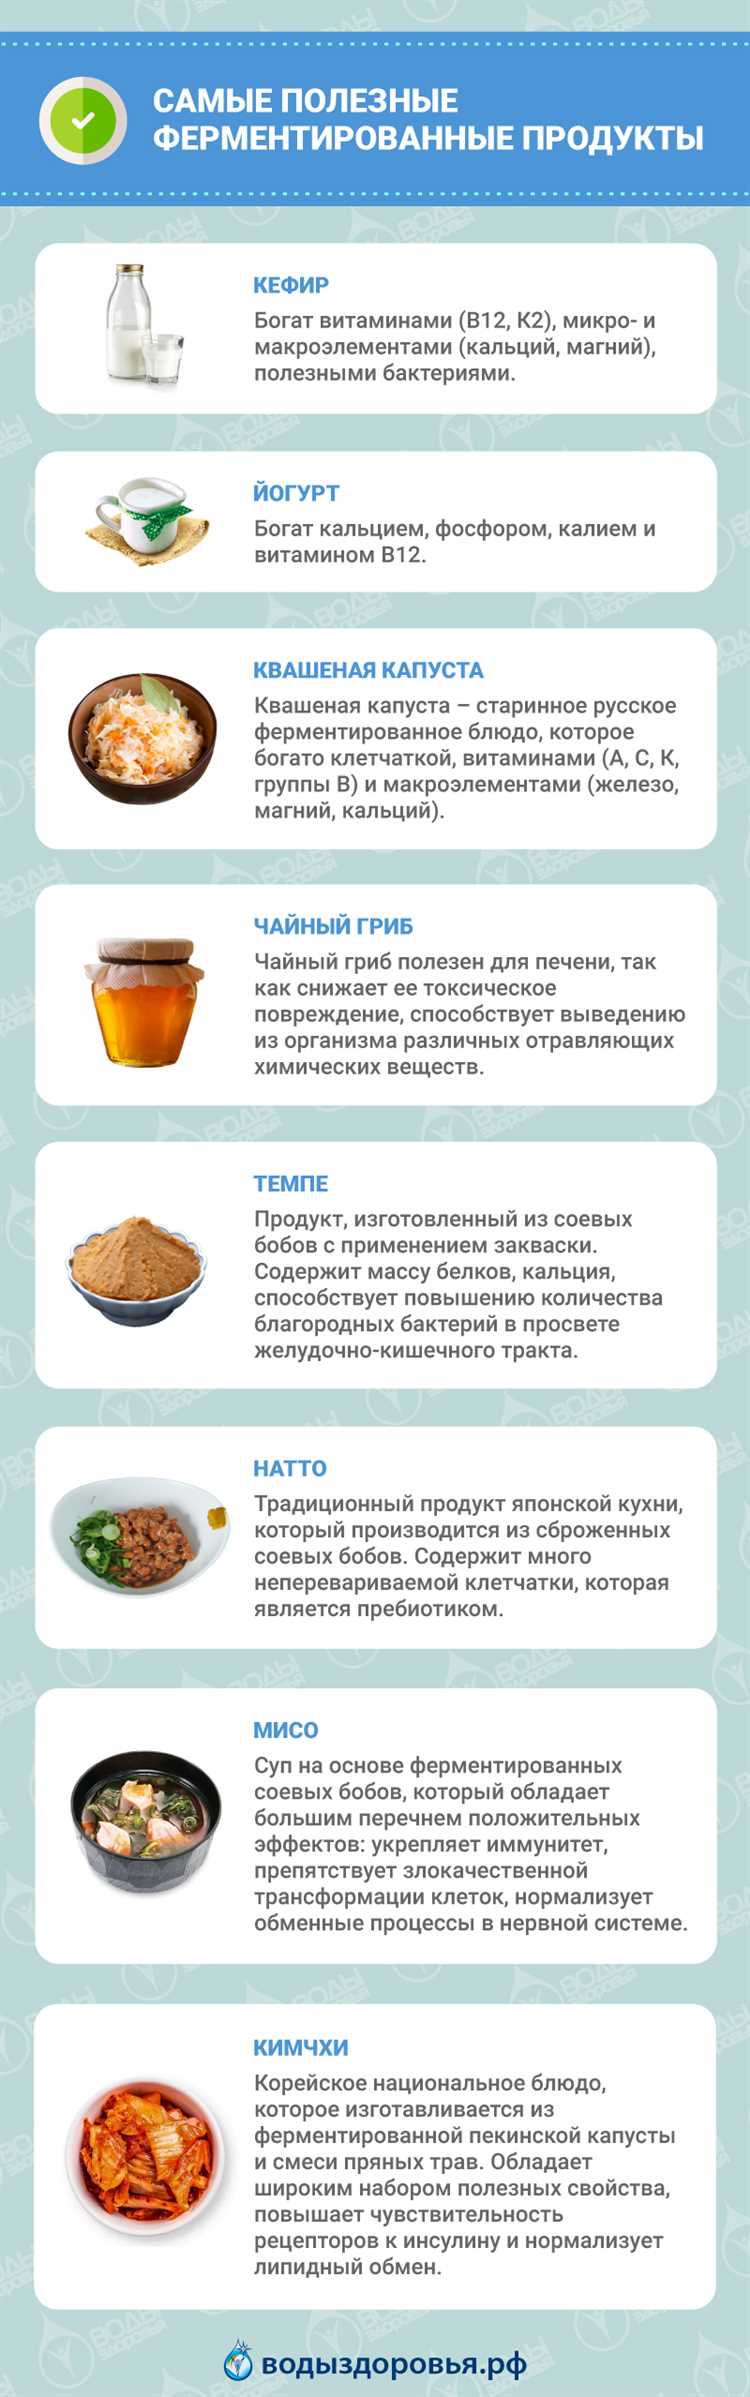 issledovanie-poisk-druzheskih-svjazej-v_1 Исследование - поиск дружеских связей в использовании ферментированных продуктов